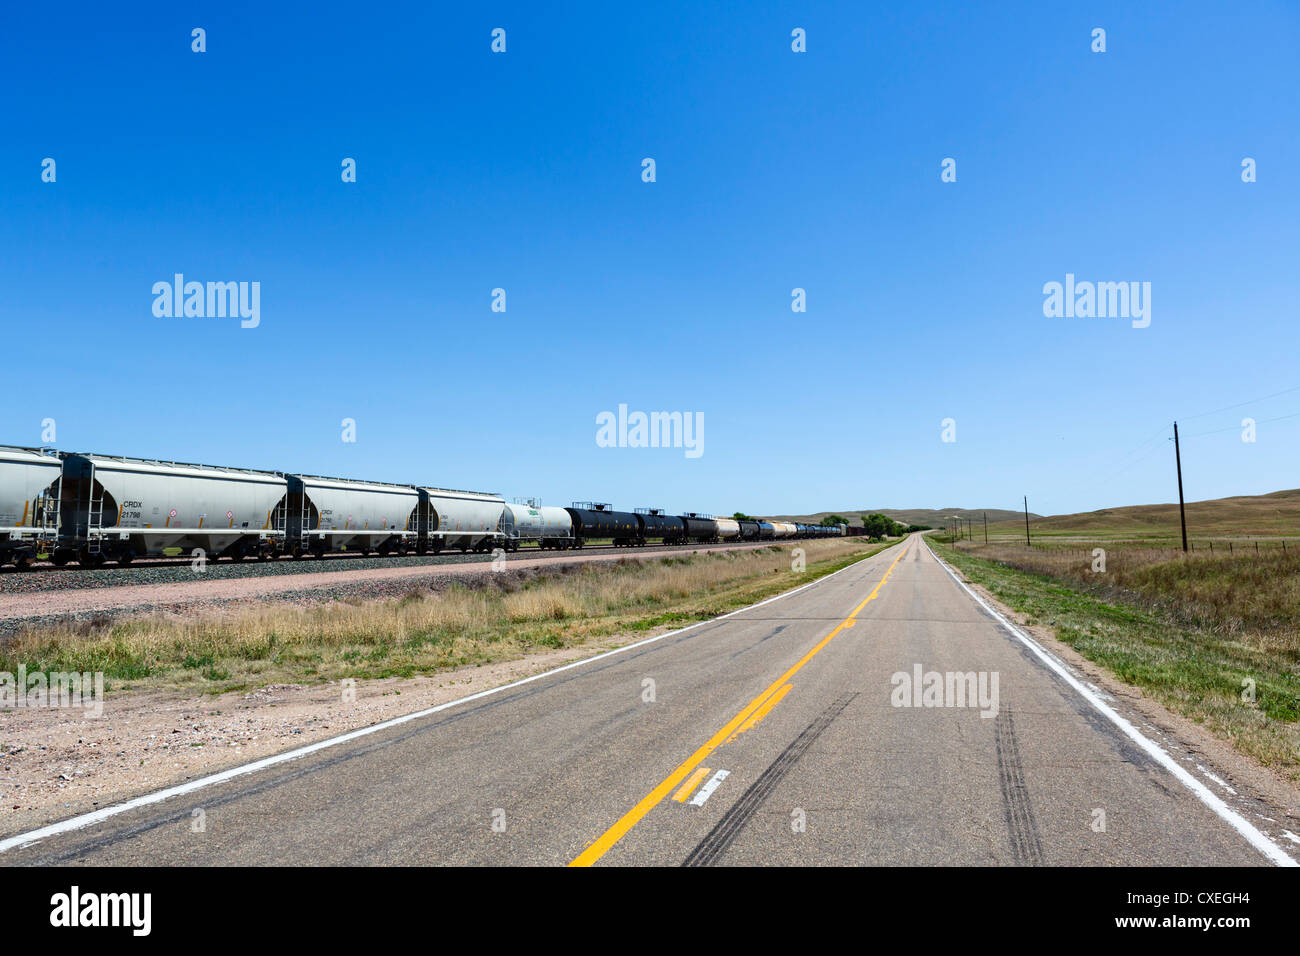 Un percorso lungo 2 km treno merci nelle zone rurali del Nebraska a fianco della porzione occidentale di autostrada NE 2, Nebraska, STATI UNITI D'AMERICA Foto Stock